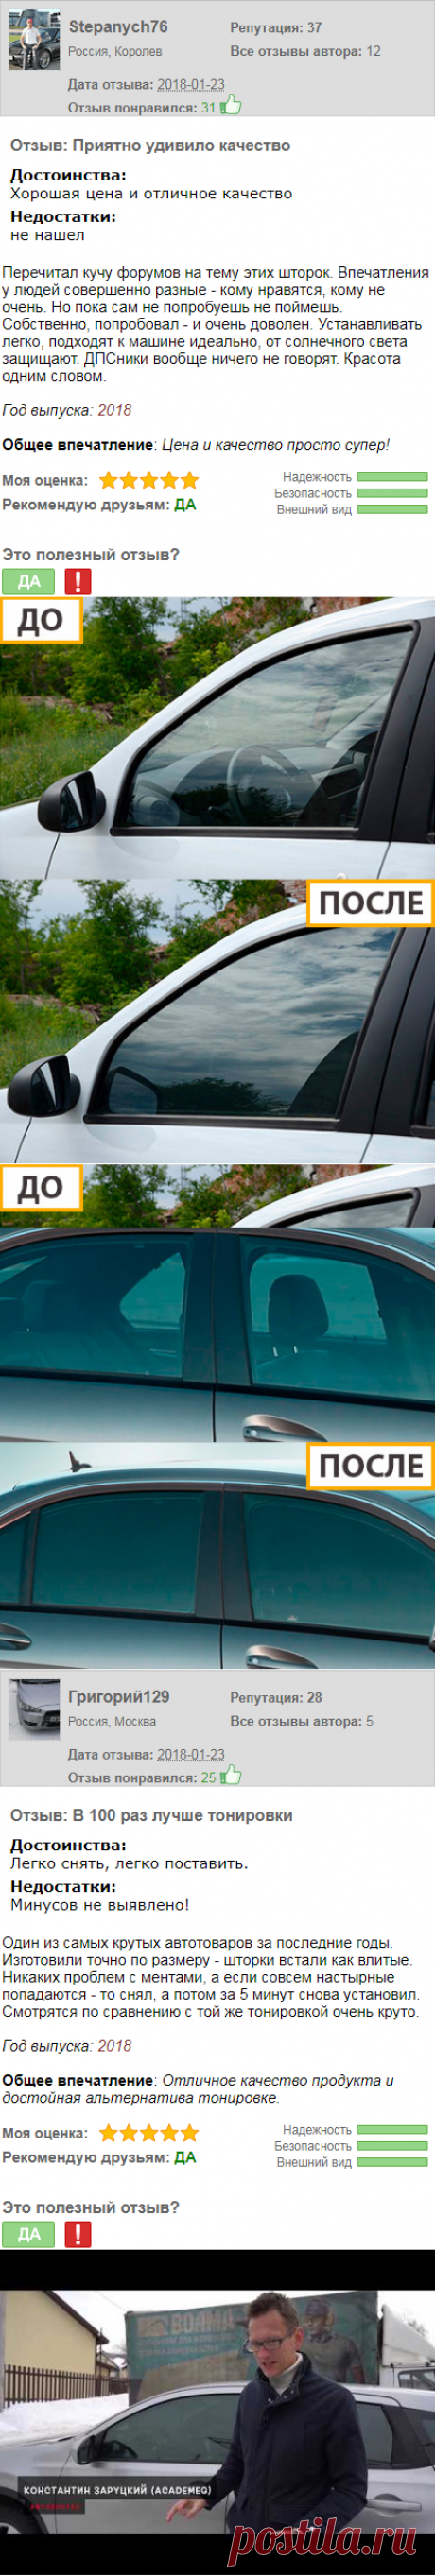 Шторки, солнцезащитные экраны TROKOT на стекла автомобилей отечественных и заежных марок.